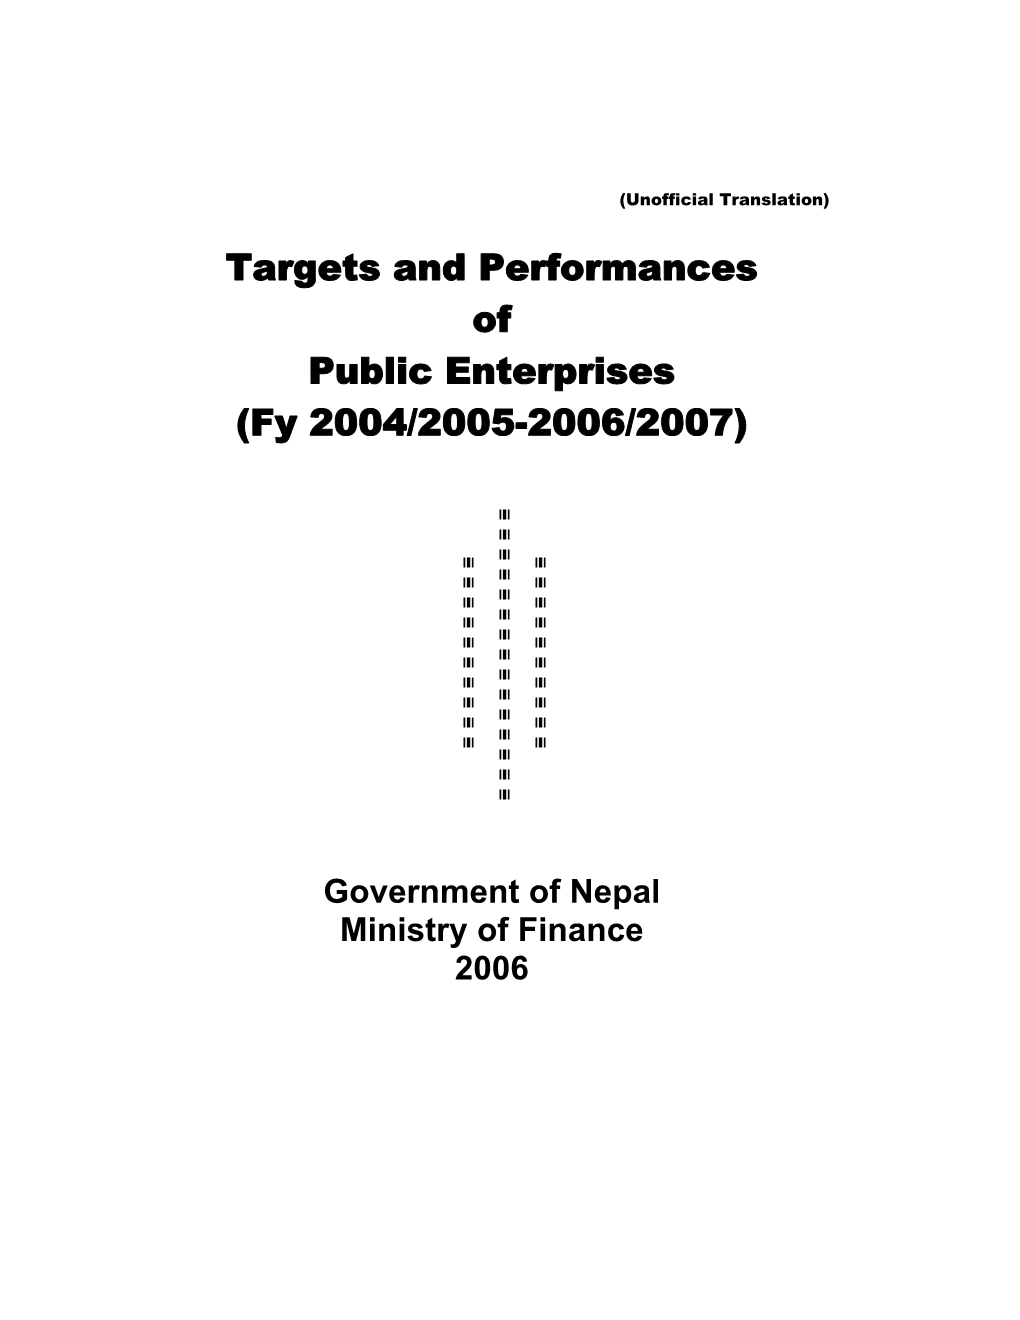 Targets and Performances of Public Enterprises (Fy 2004/2005-2006/2007)